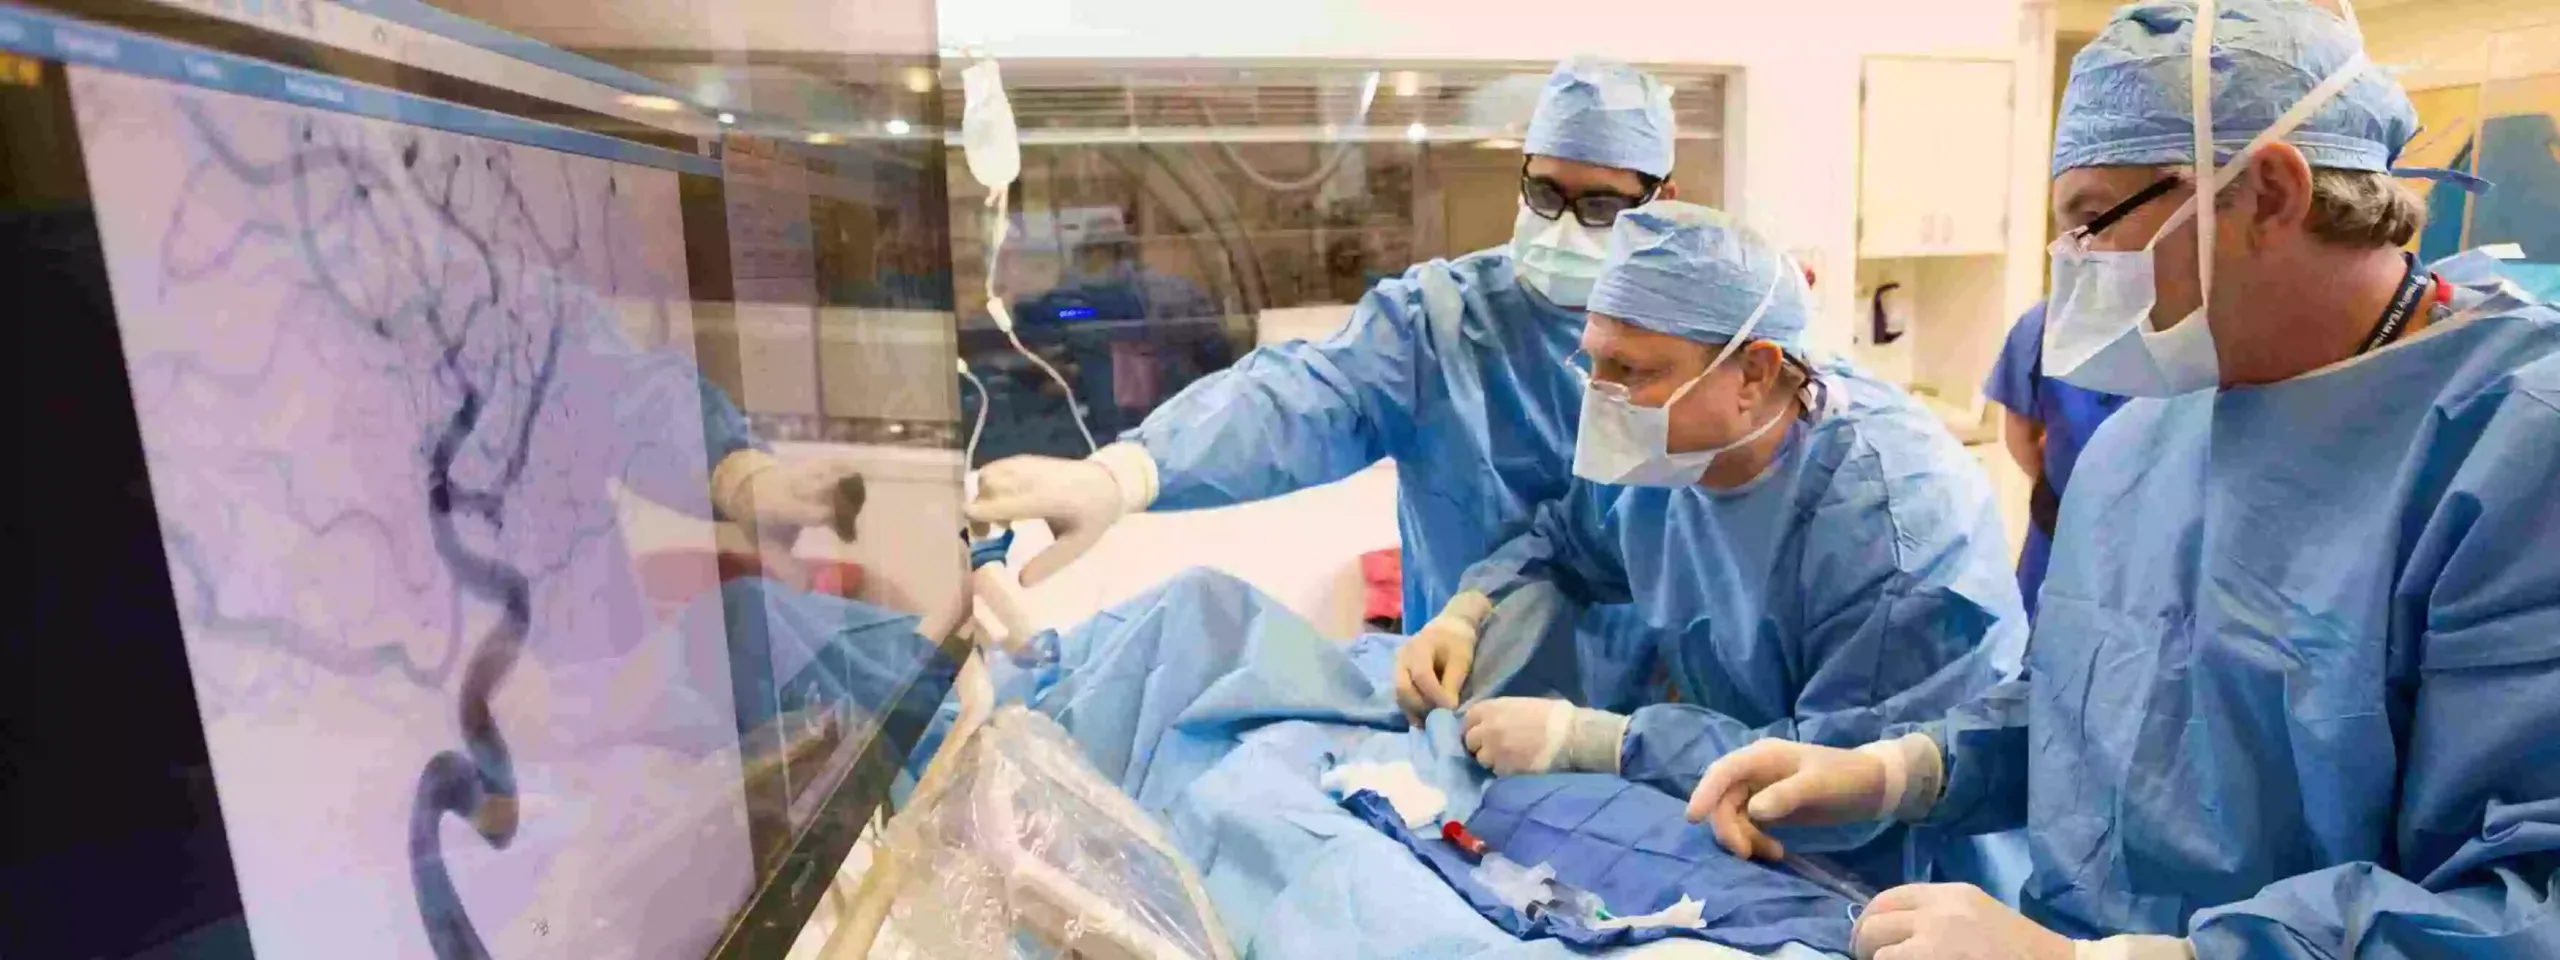 يتم إجراء عملية استئصال باطنة الشريان السباتي في تركيا بيد أمهر الجراحين المختصين وباستعمال أحدث التقنيات الجراحية